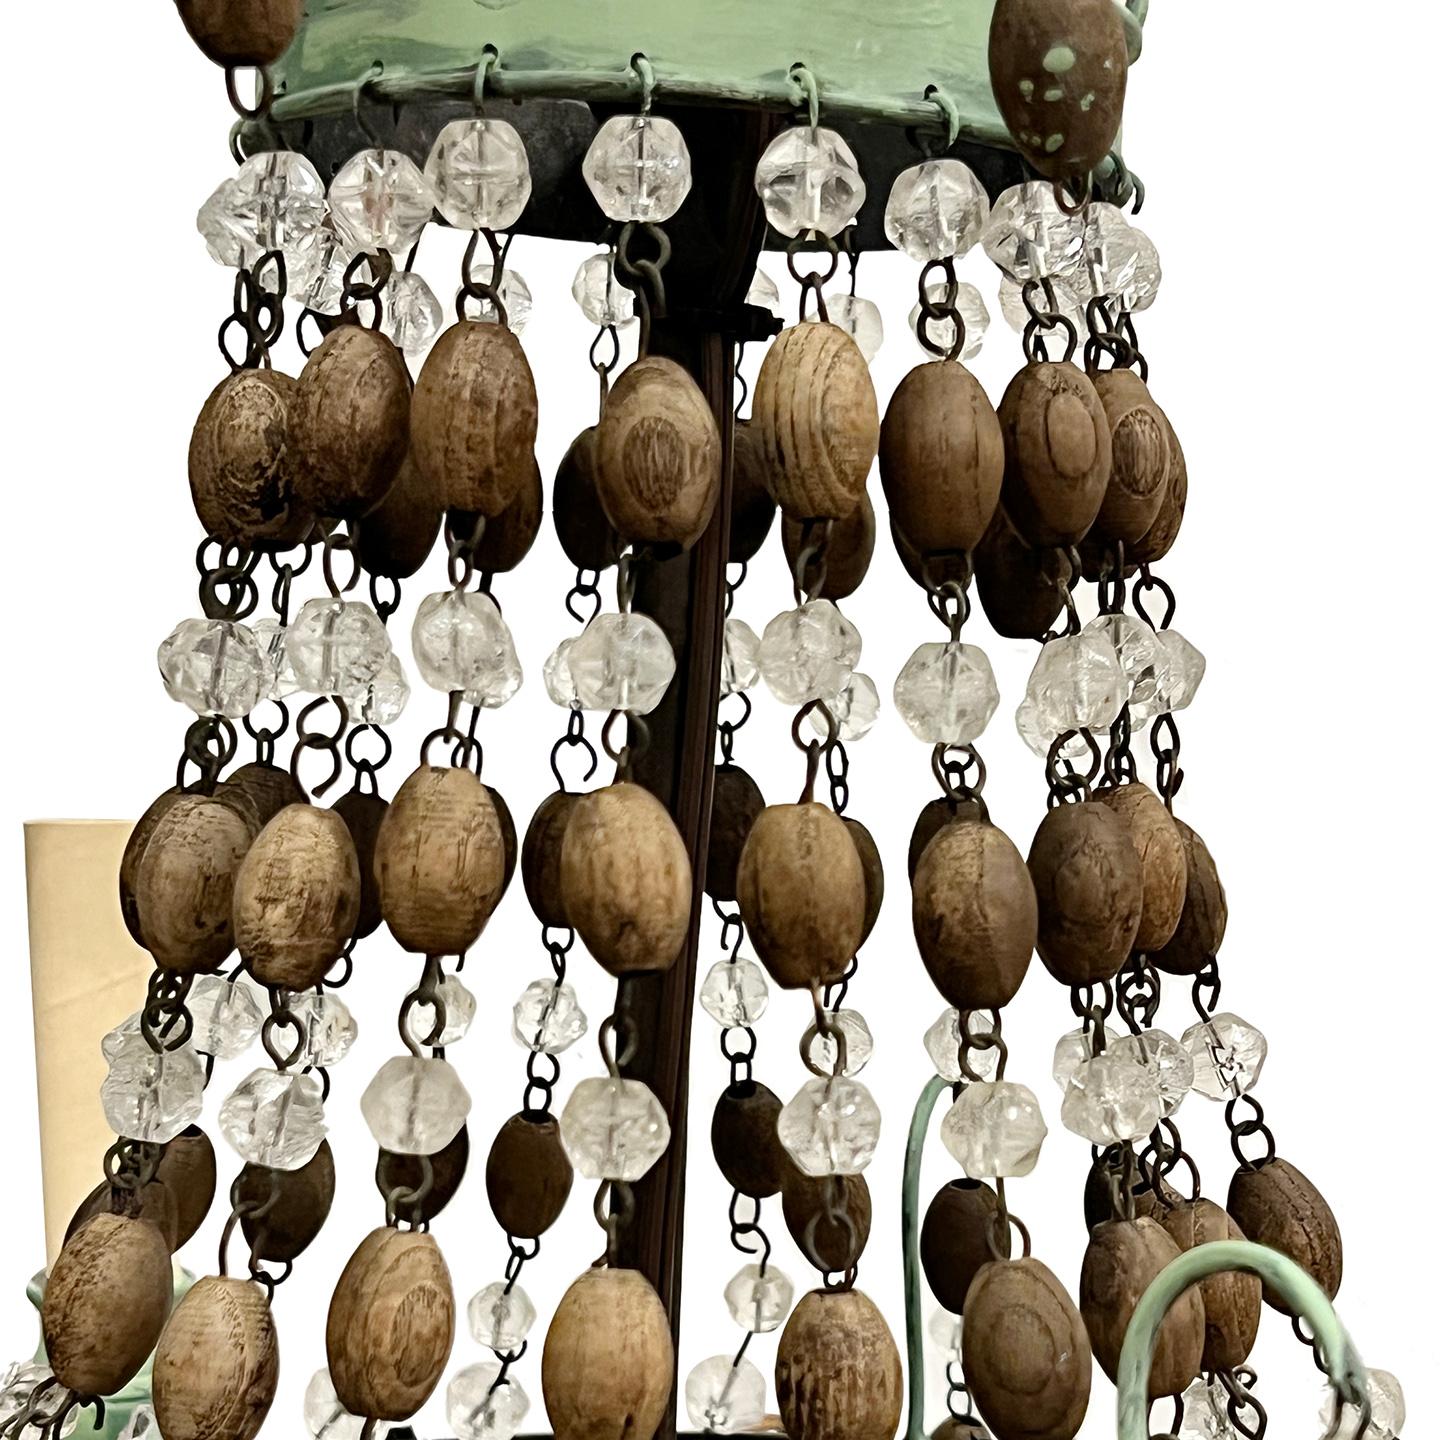 Lustre italien à neuf lumières en métal peint et perles de bois, datant des années 1950, avec patine d'origine.

Mesures :
Chute : 25